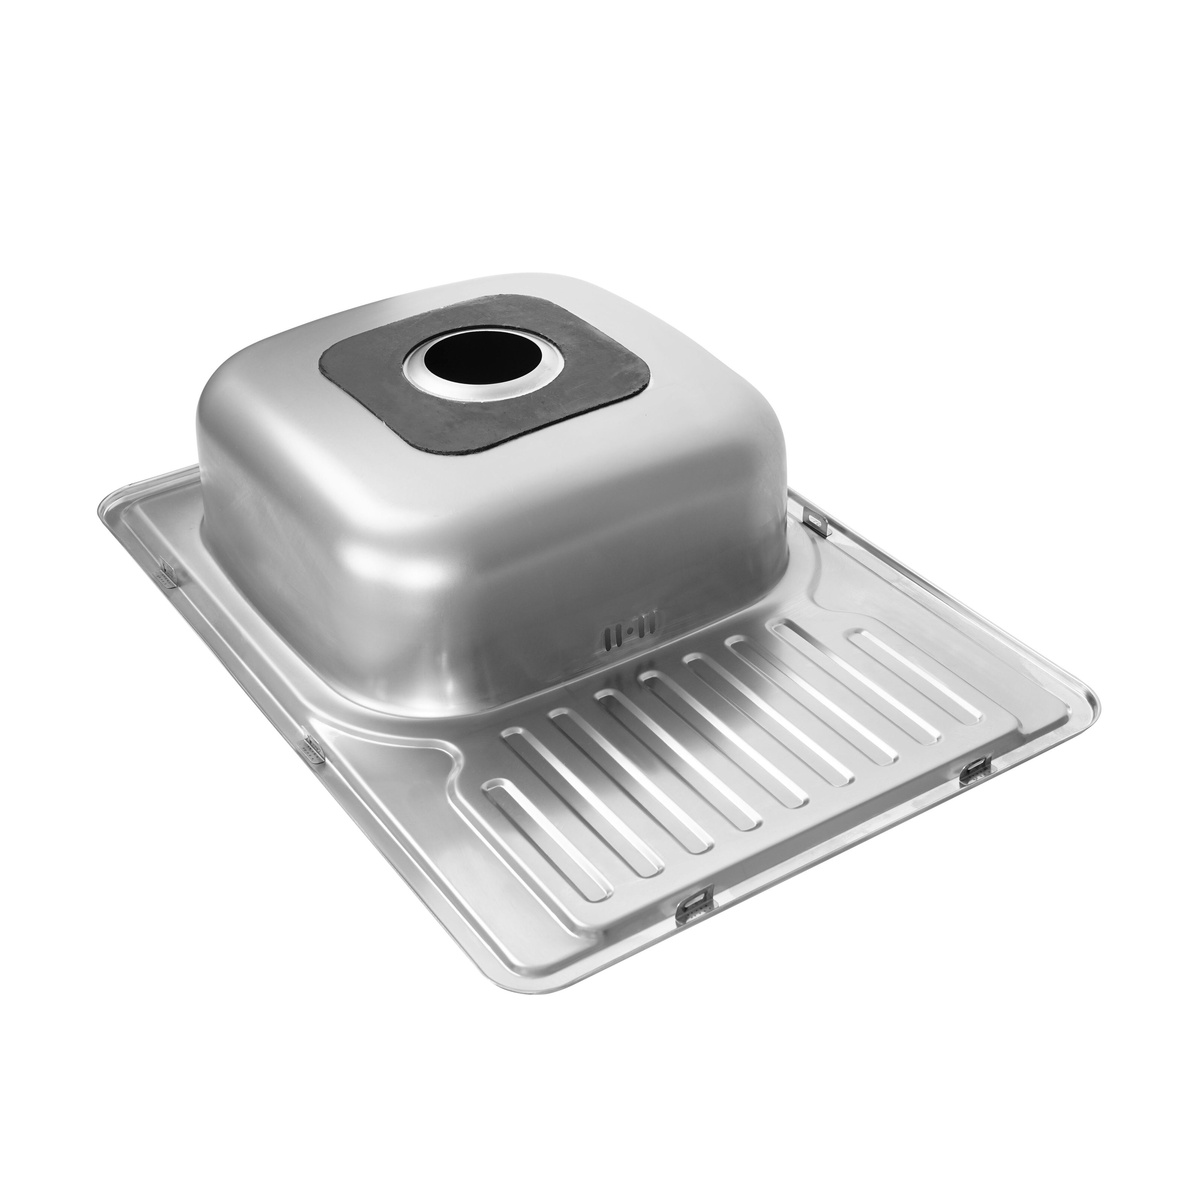 Мийка для кухні із нержавіючої сталі прямокутна PLATINUM 7050 700x500x180мм матова 0.8мм із сифоном PLS-A18190